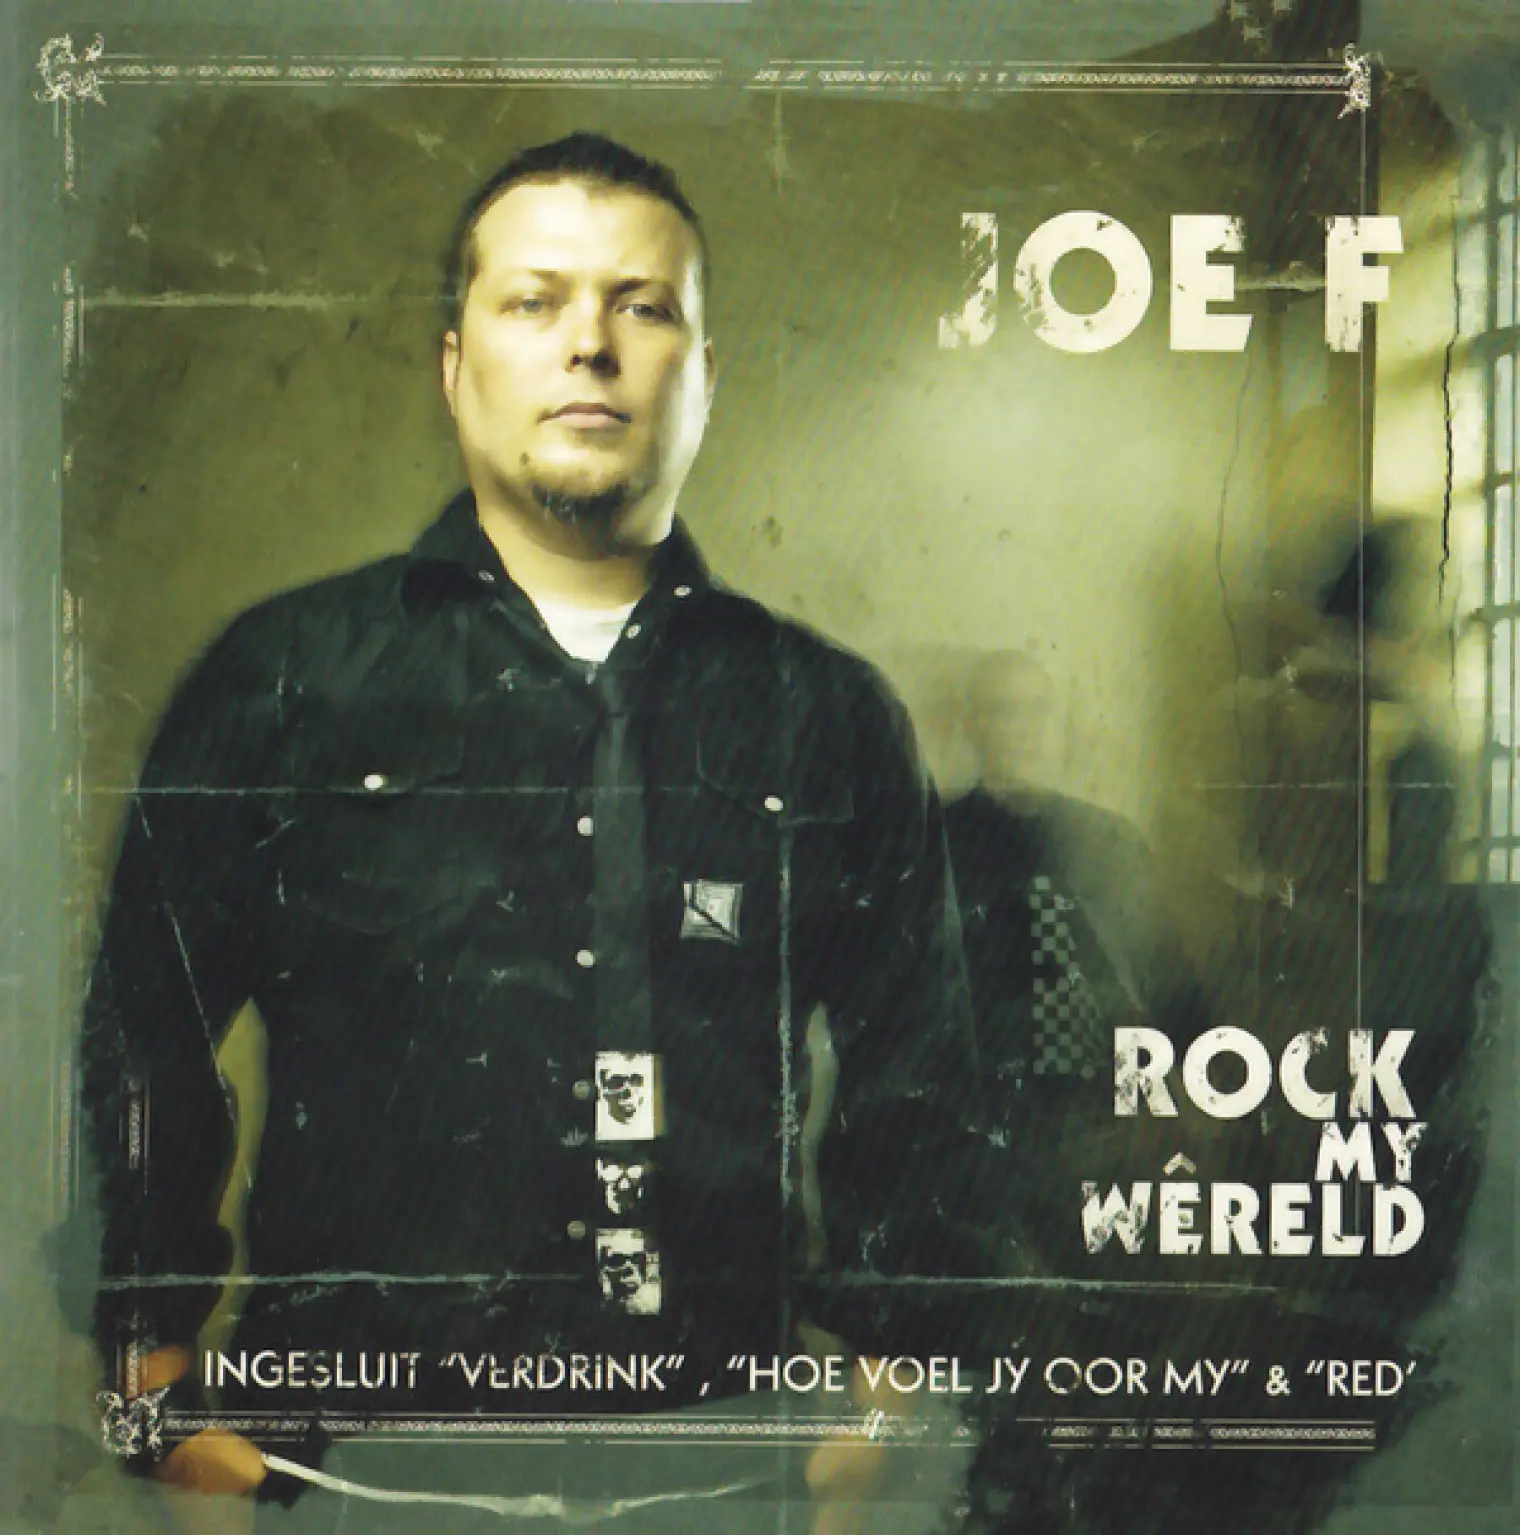 Rock My Wêreld -  Joe F 